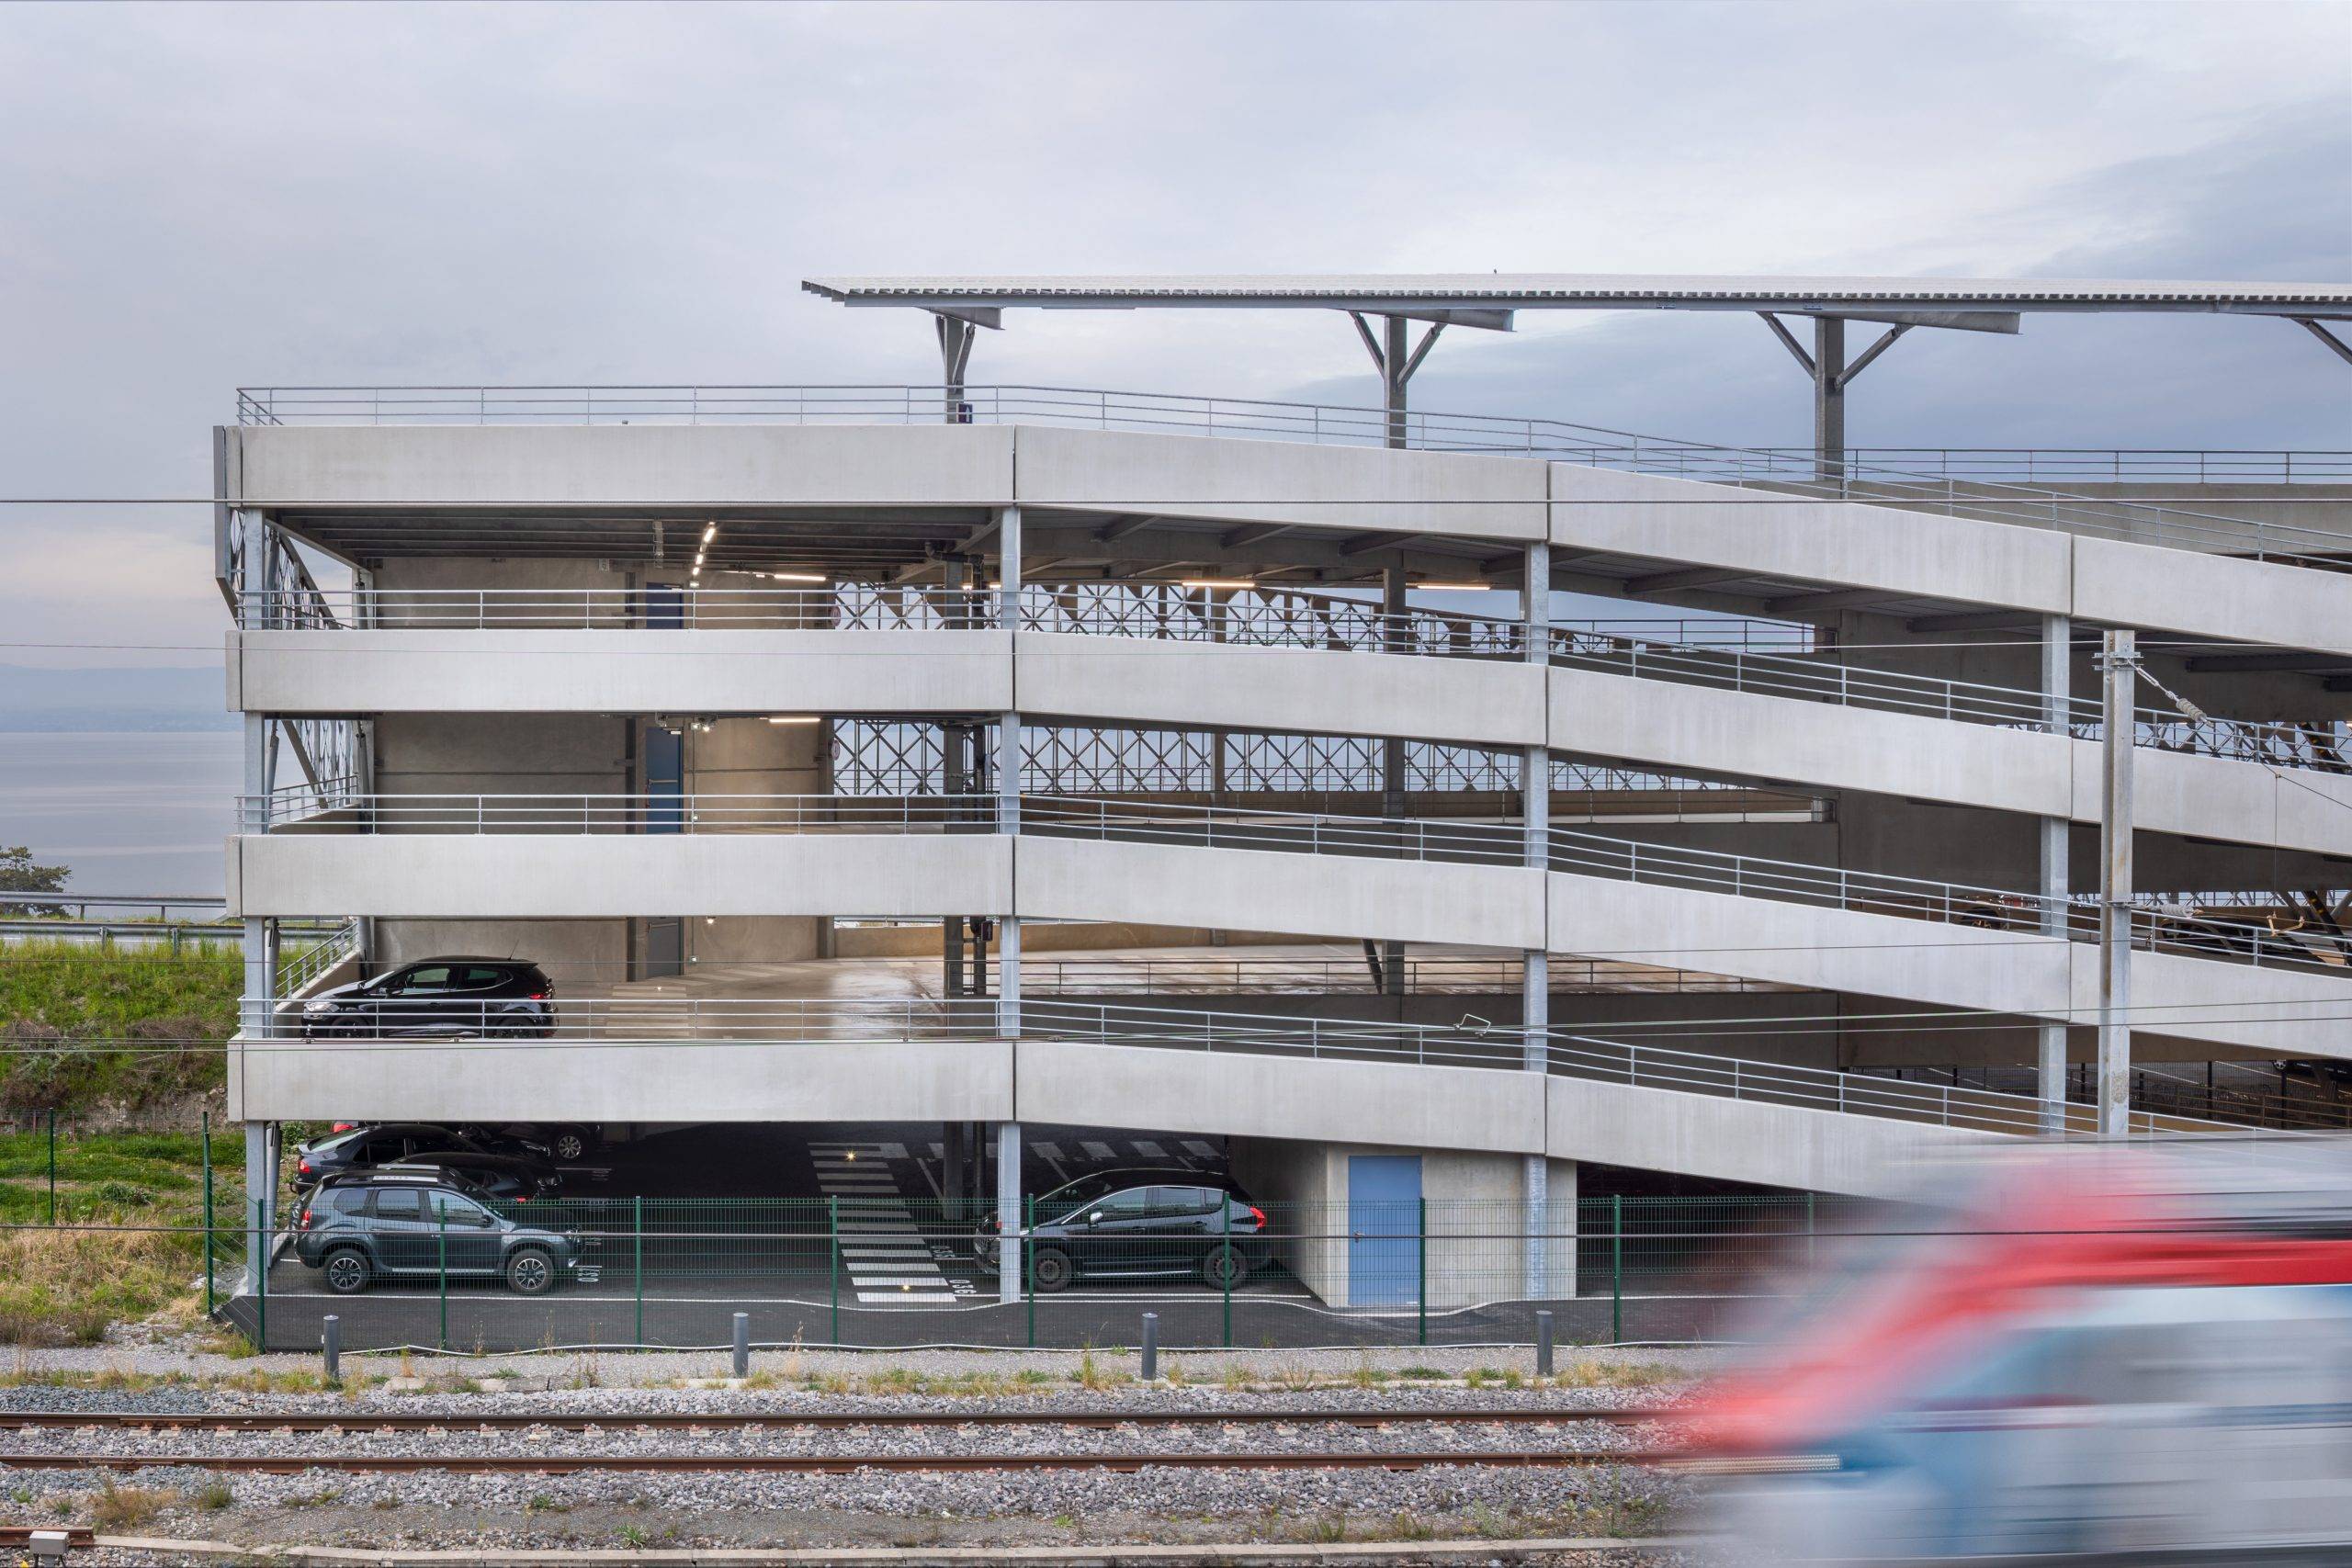 Parking Gare SNCF Evian avec ombrières photovoltaïques